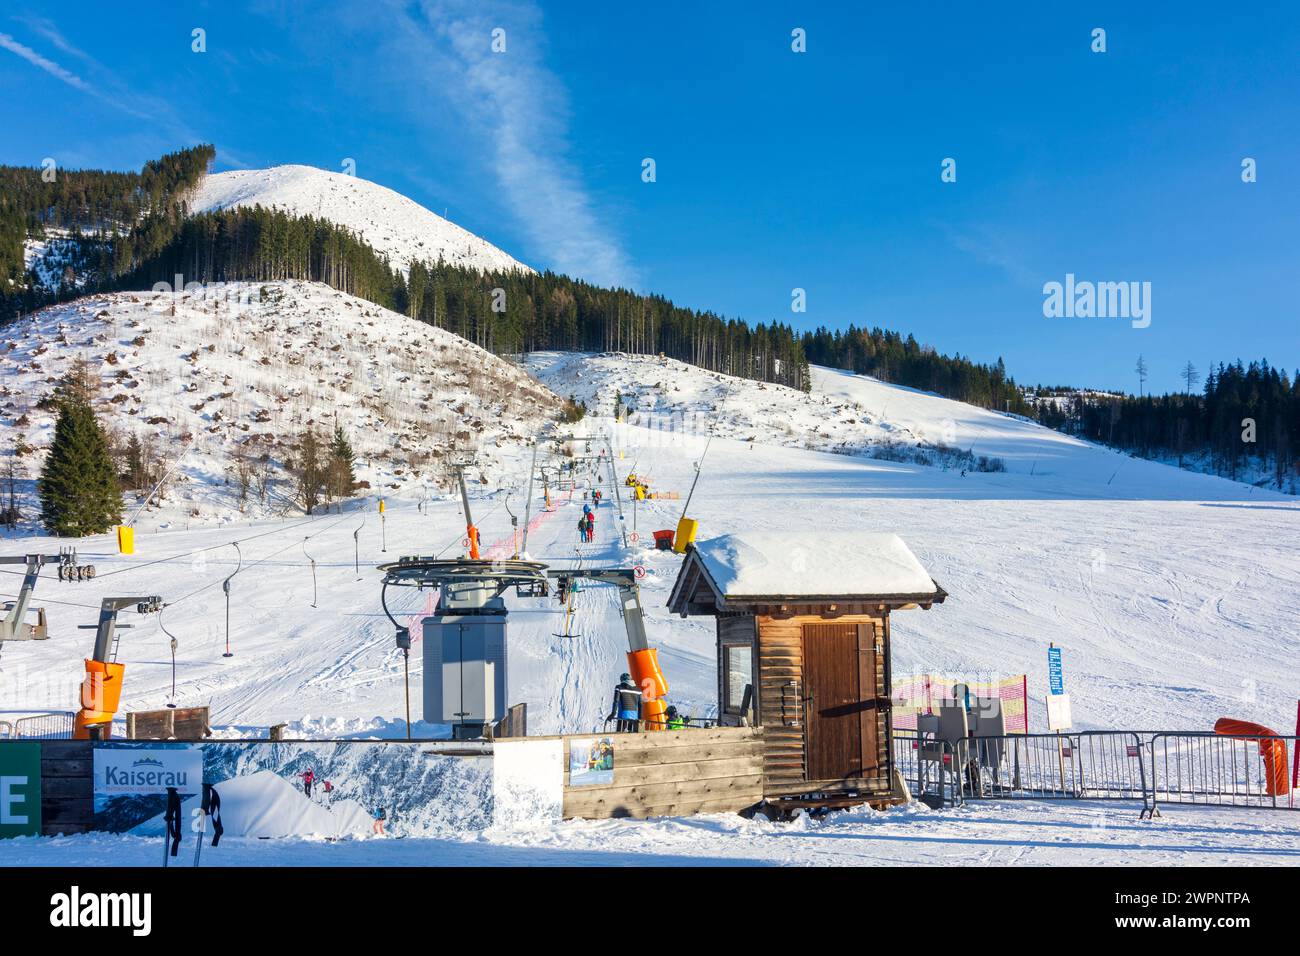 Parc national Gesäuse, remontée mécanique Kaiserau, skieurs alpins, ski, neige à Gesäuse, Styrie, Autriche Banque D'Images